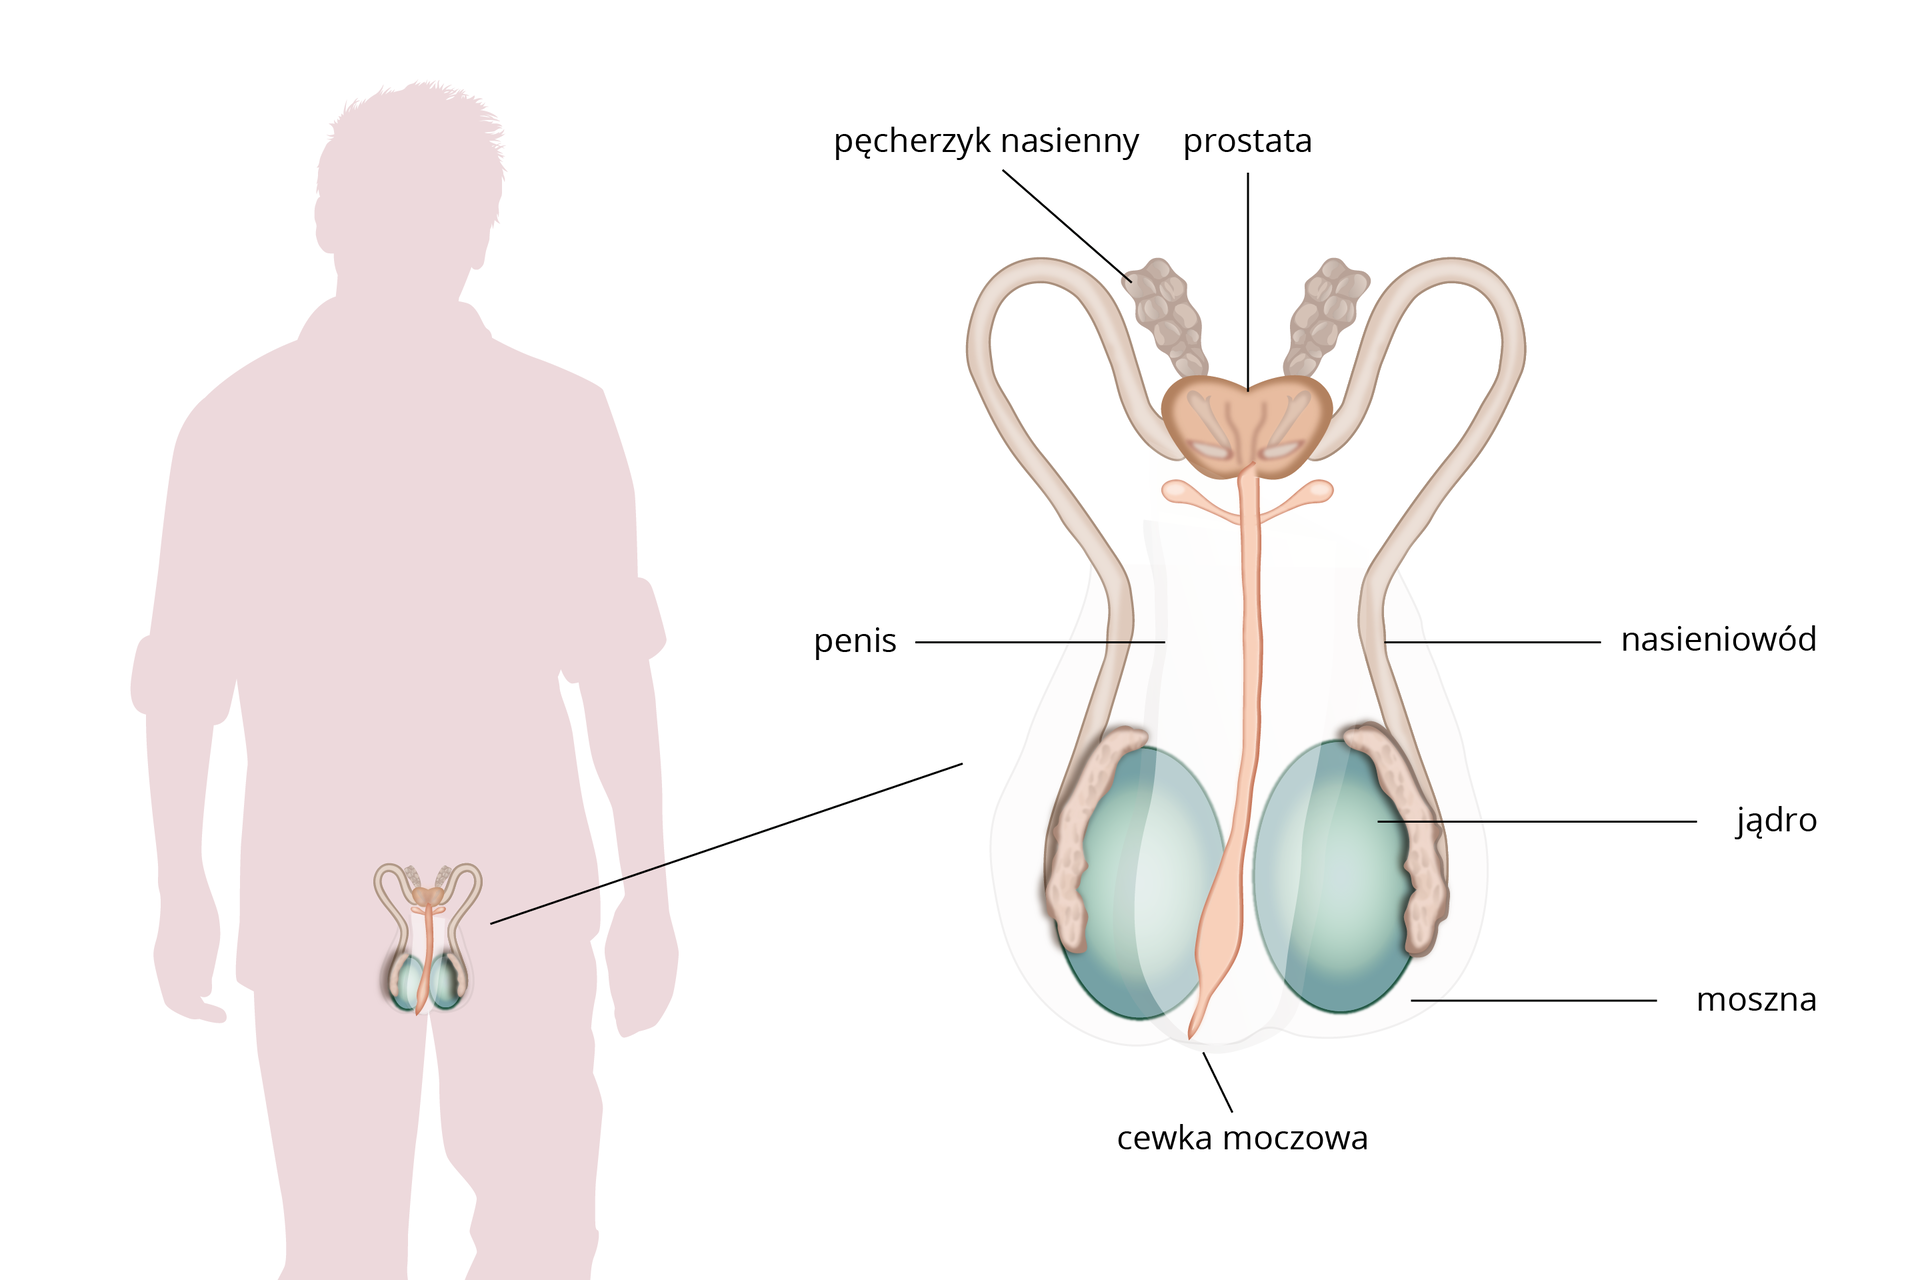 Schemat przedstawia budowę układu rozrodczego mężczyzny. Po lewej stronie sylwetka mężczyzny z układem rozrodczym umieszczonym w obrębie miednicy. Po prawej stronie schemat układu rozrodczego z opisem. Kulistego kształtu parzyste jądra umieszczone w mosznie łączą się z długimi przewodami – nasieniowodami. Następnie uchodzą do nich pęcherzyki nasienne. Nieparzysta prostata łączy się cewką moczową, która biegnie w obrębie prącia.